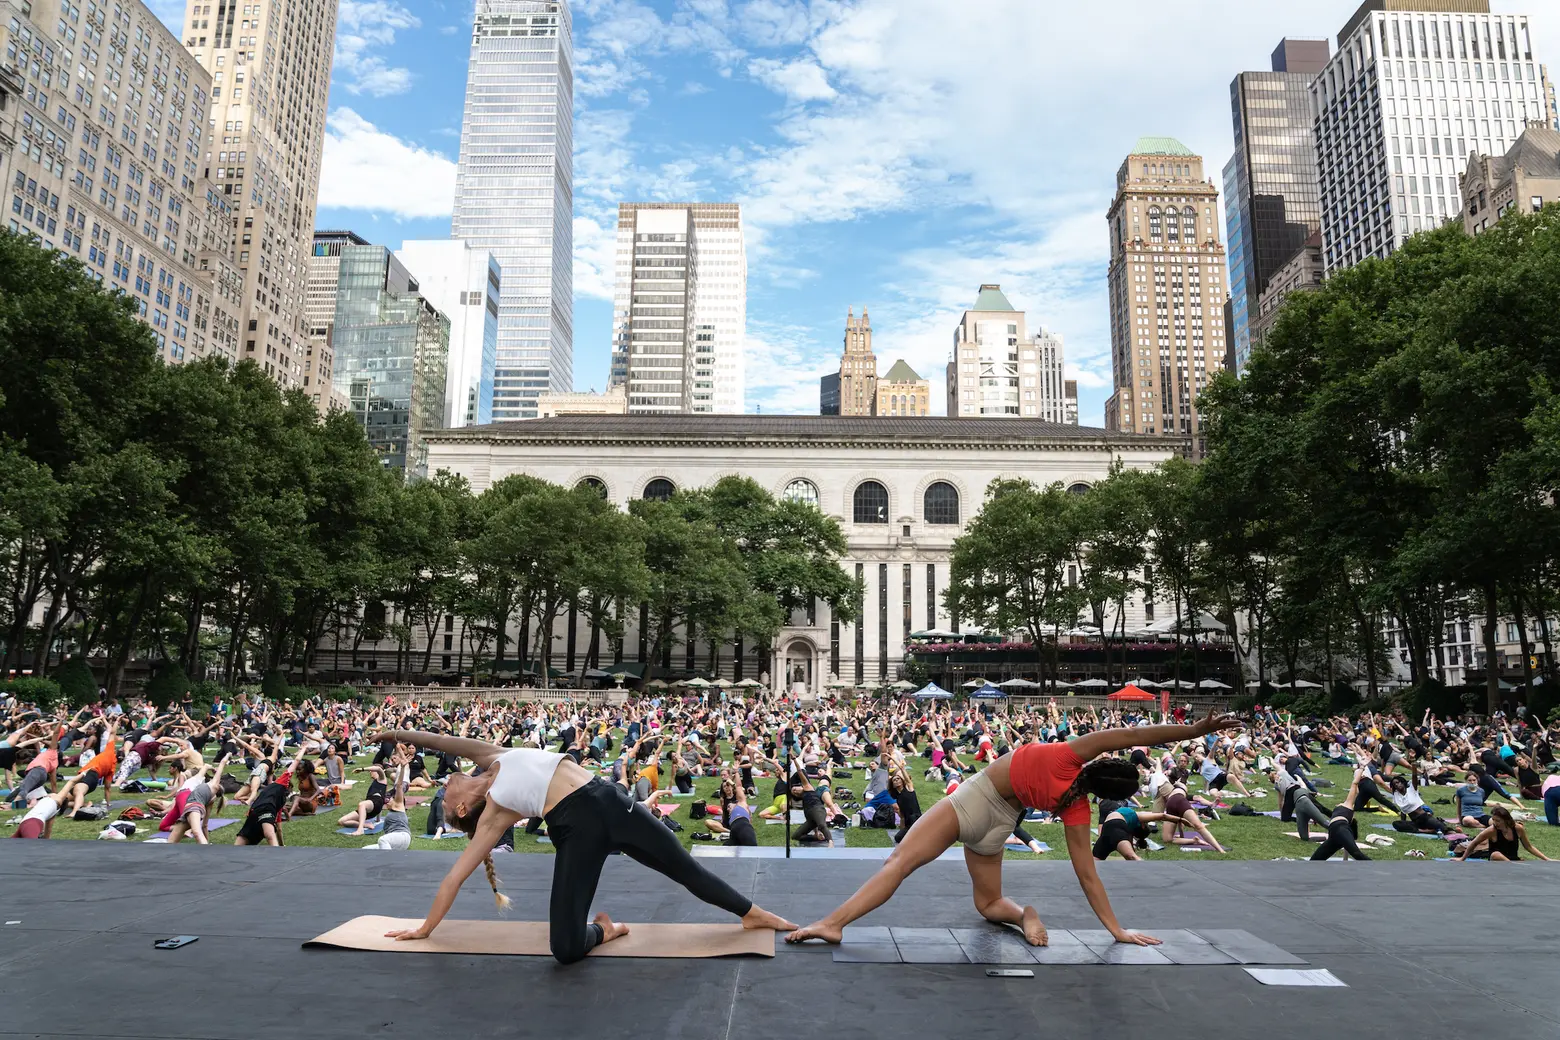 CENTRAL PARK YOGA CLASSES - UrbanNomad YOGA IN CENTRAL PARK, Outdoor Yoga  Classes in NYC